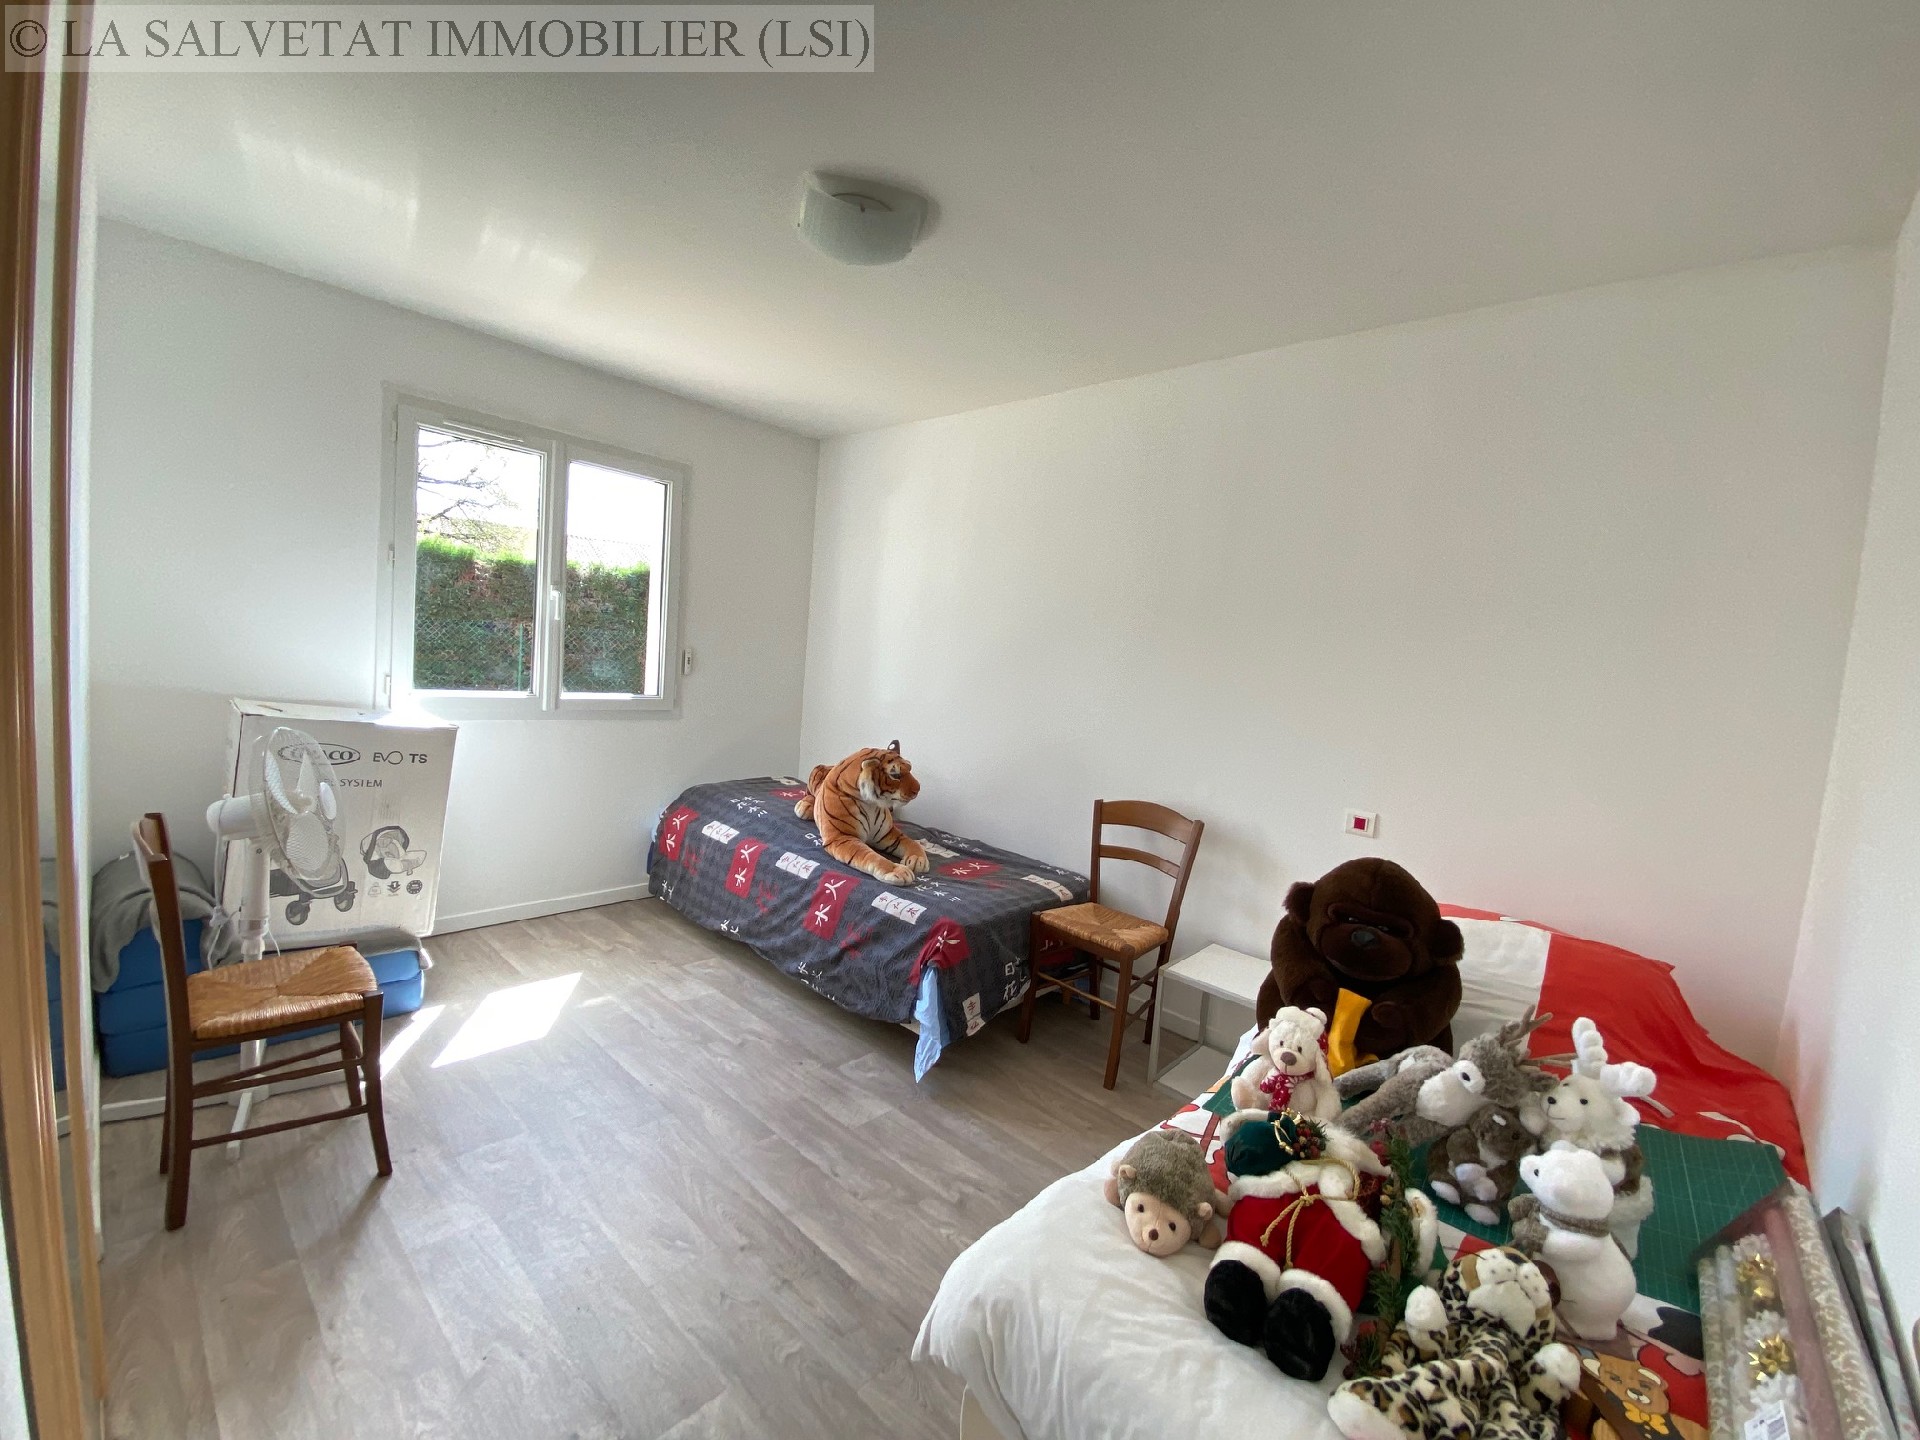 Vente maison-villa - BONREPOS SUR AUSSONNELLE<br>186 m², 7 pièces